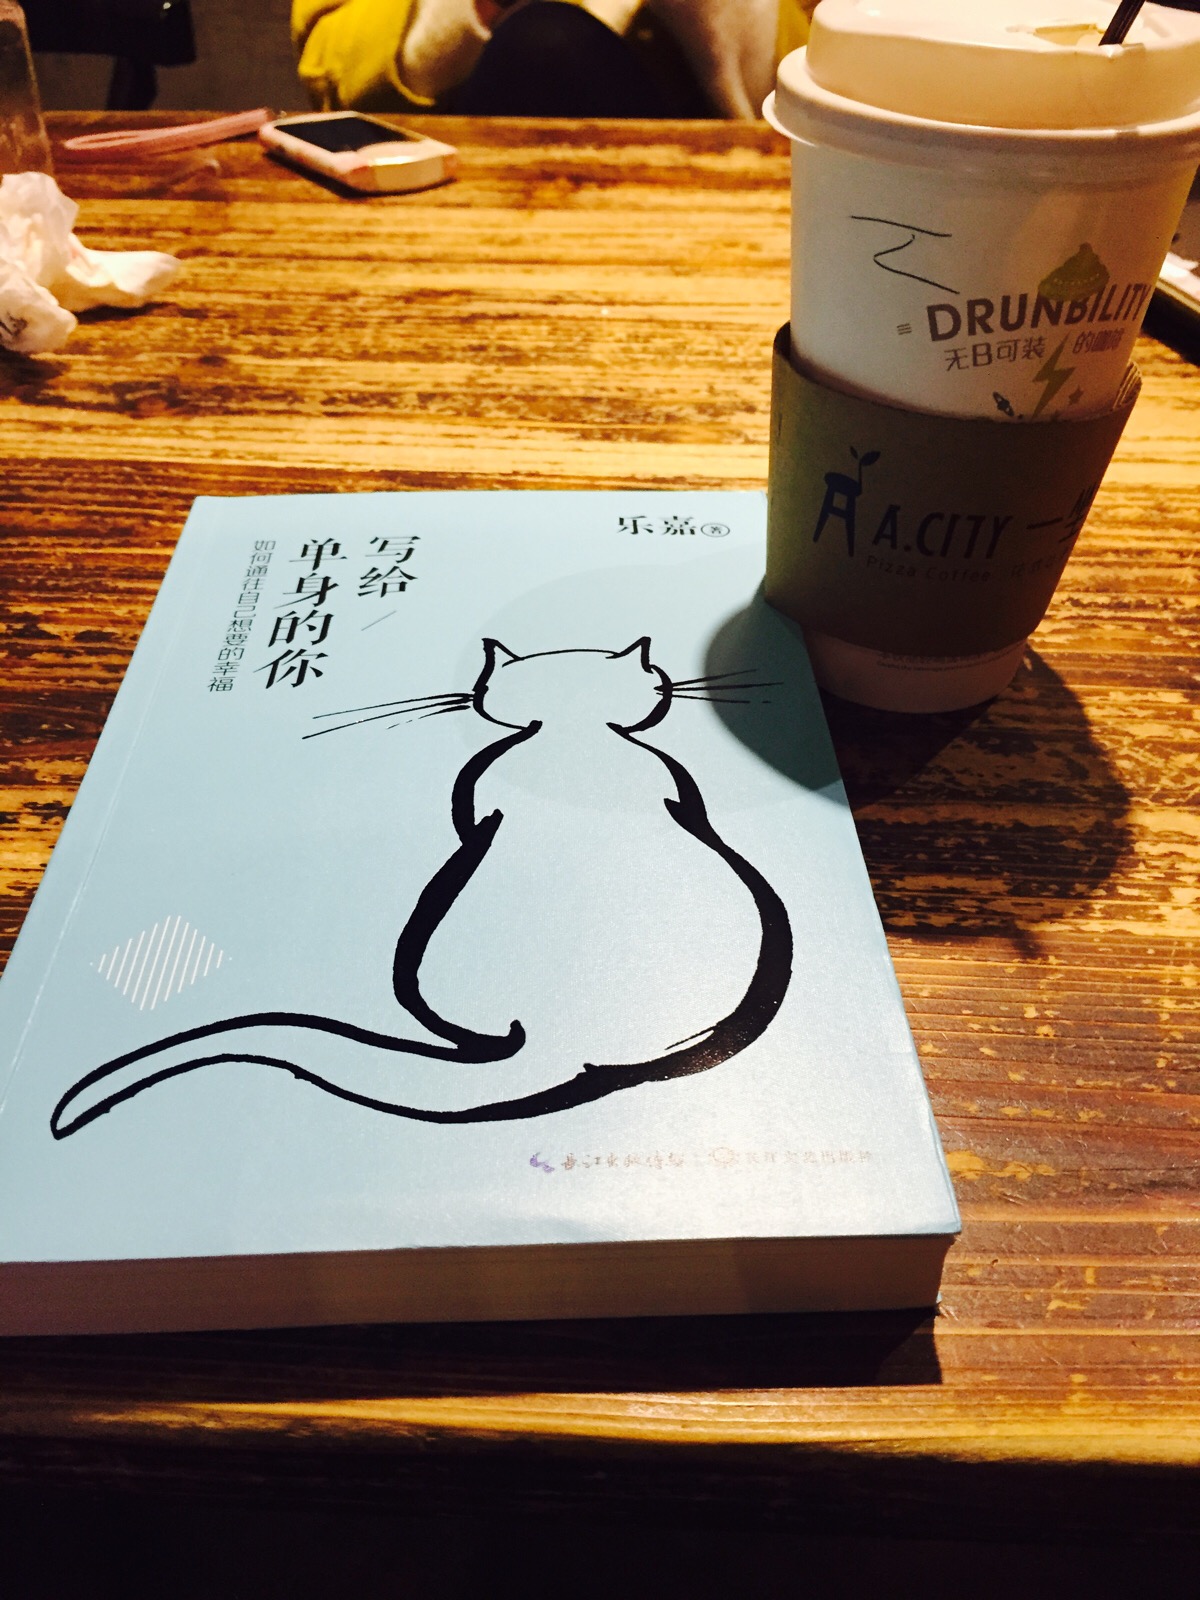 一本书一杯咖啡